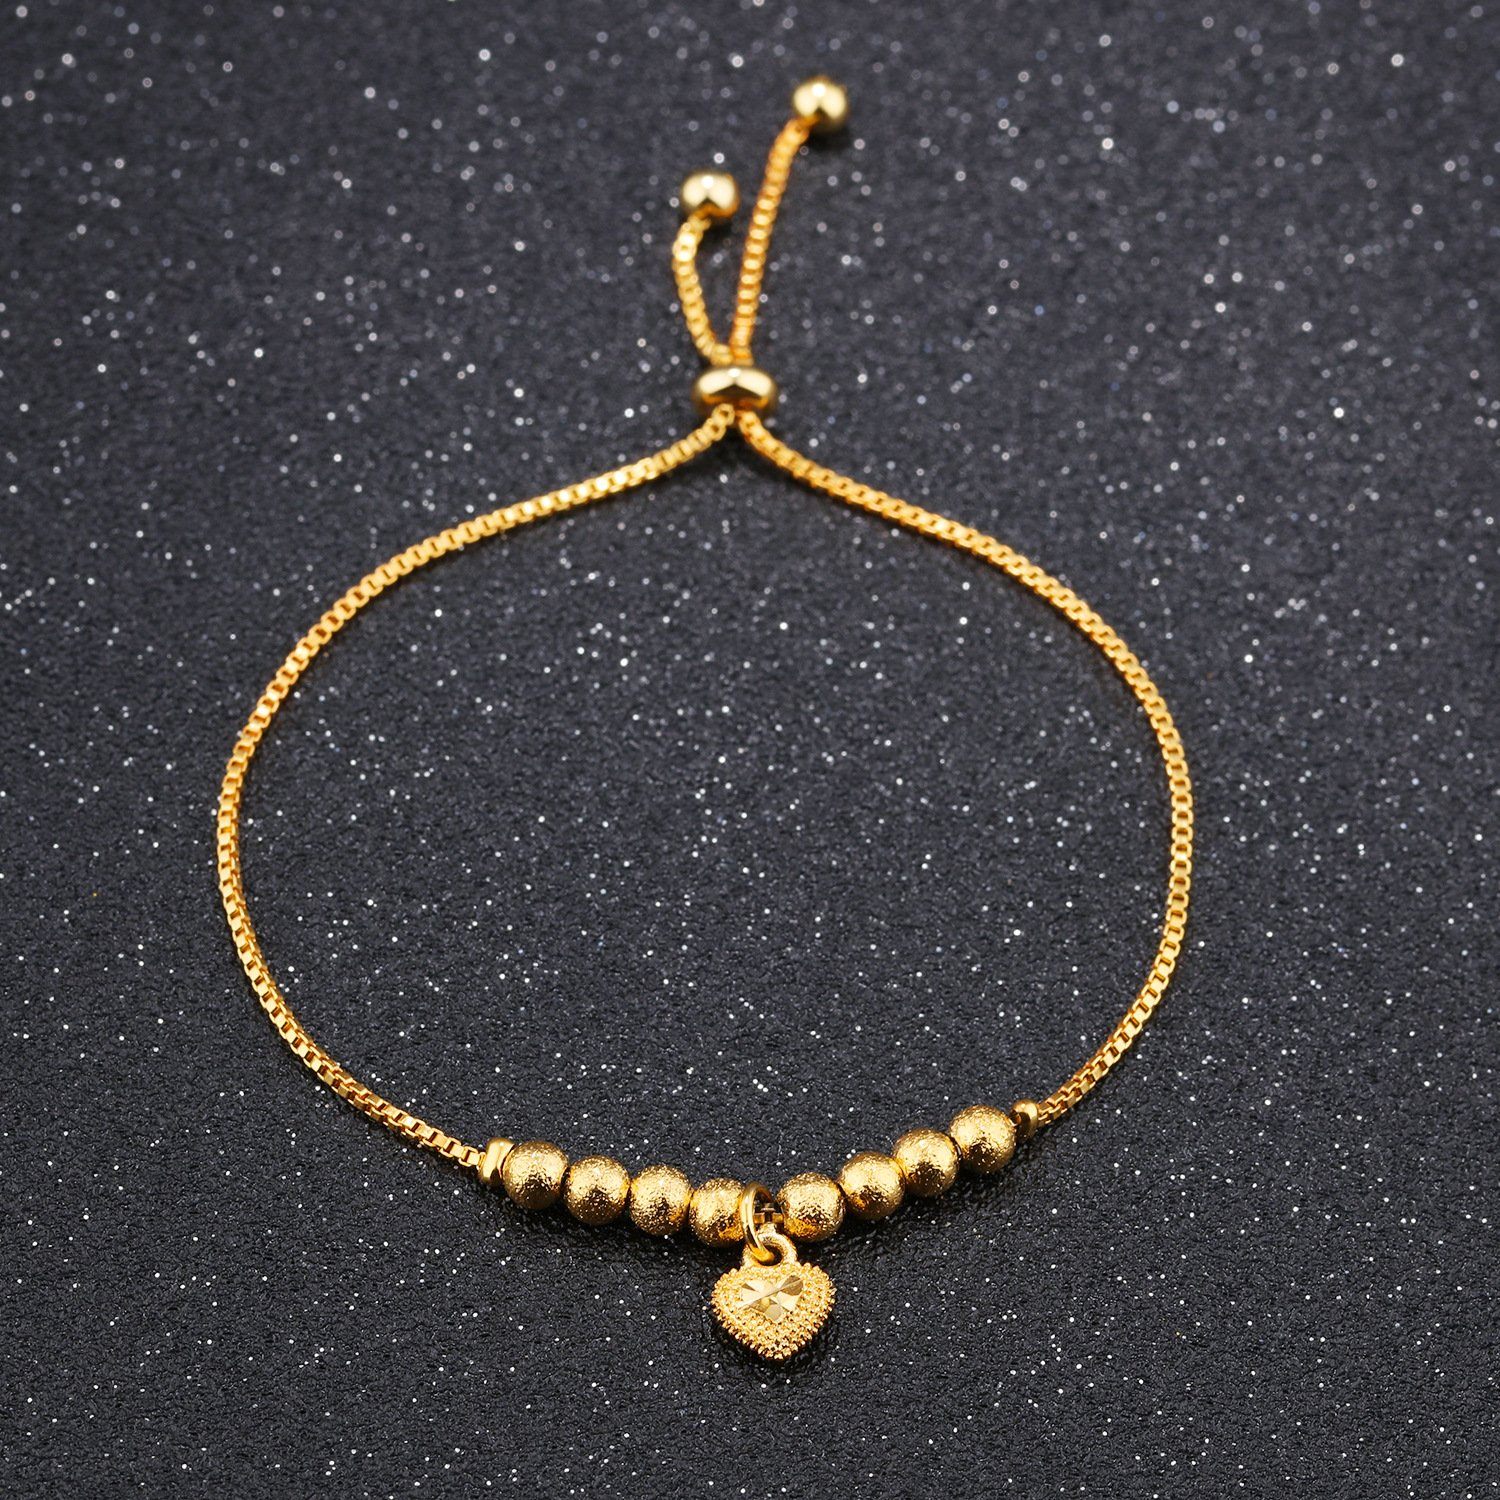 gold adjustable bracelet